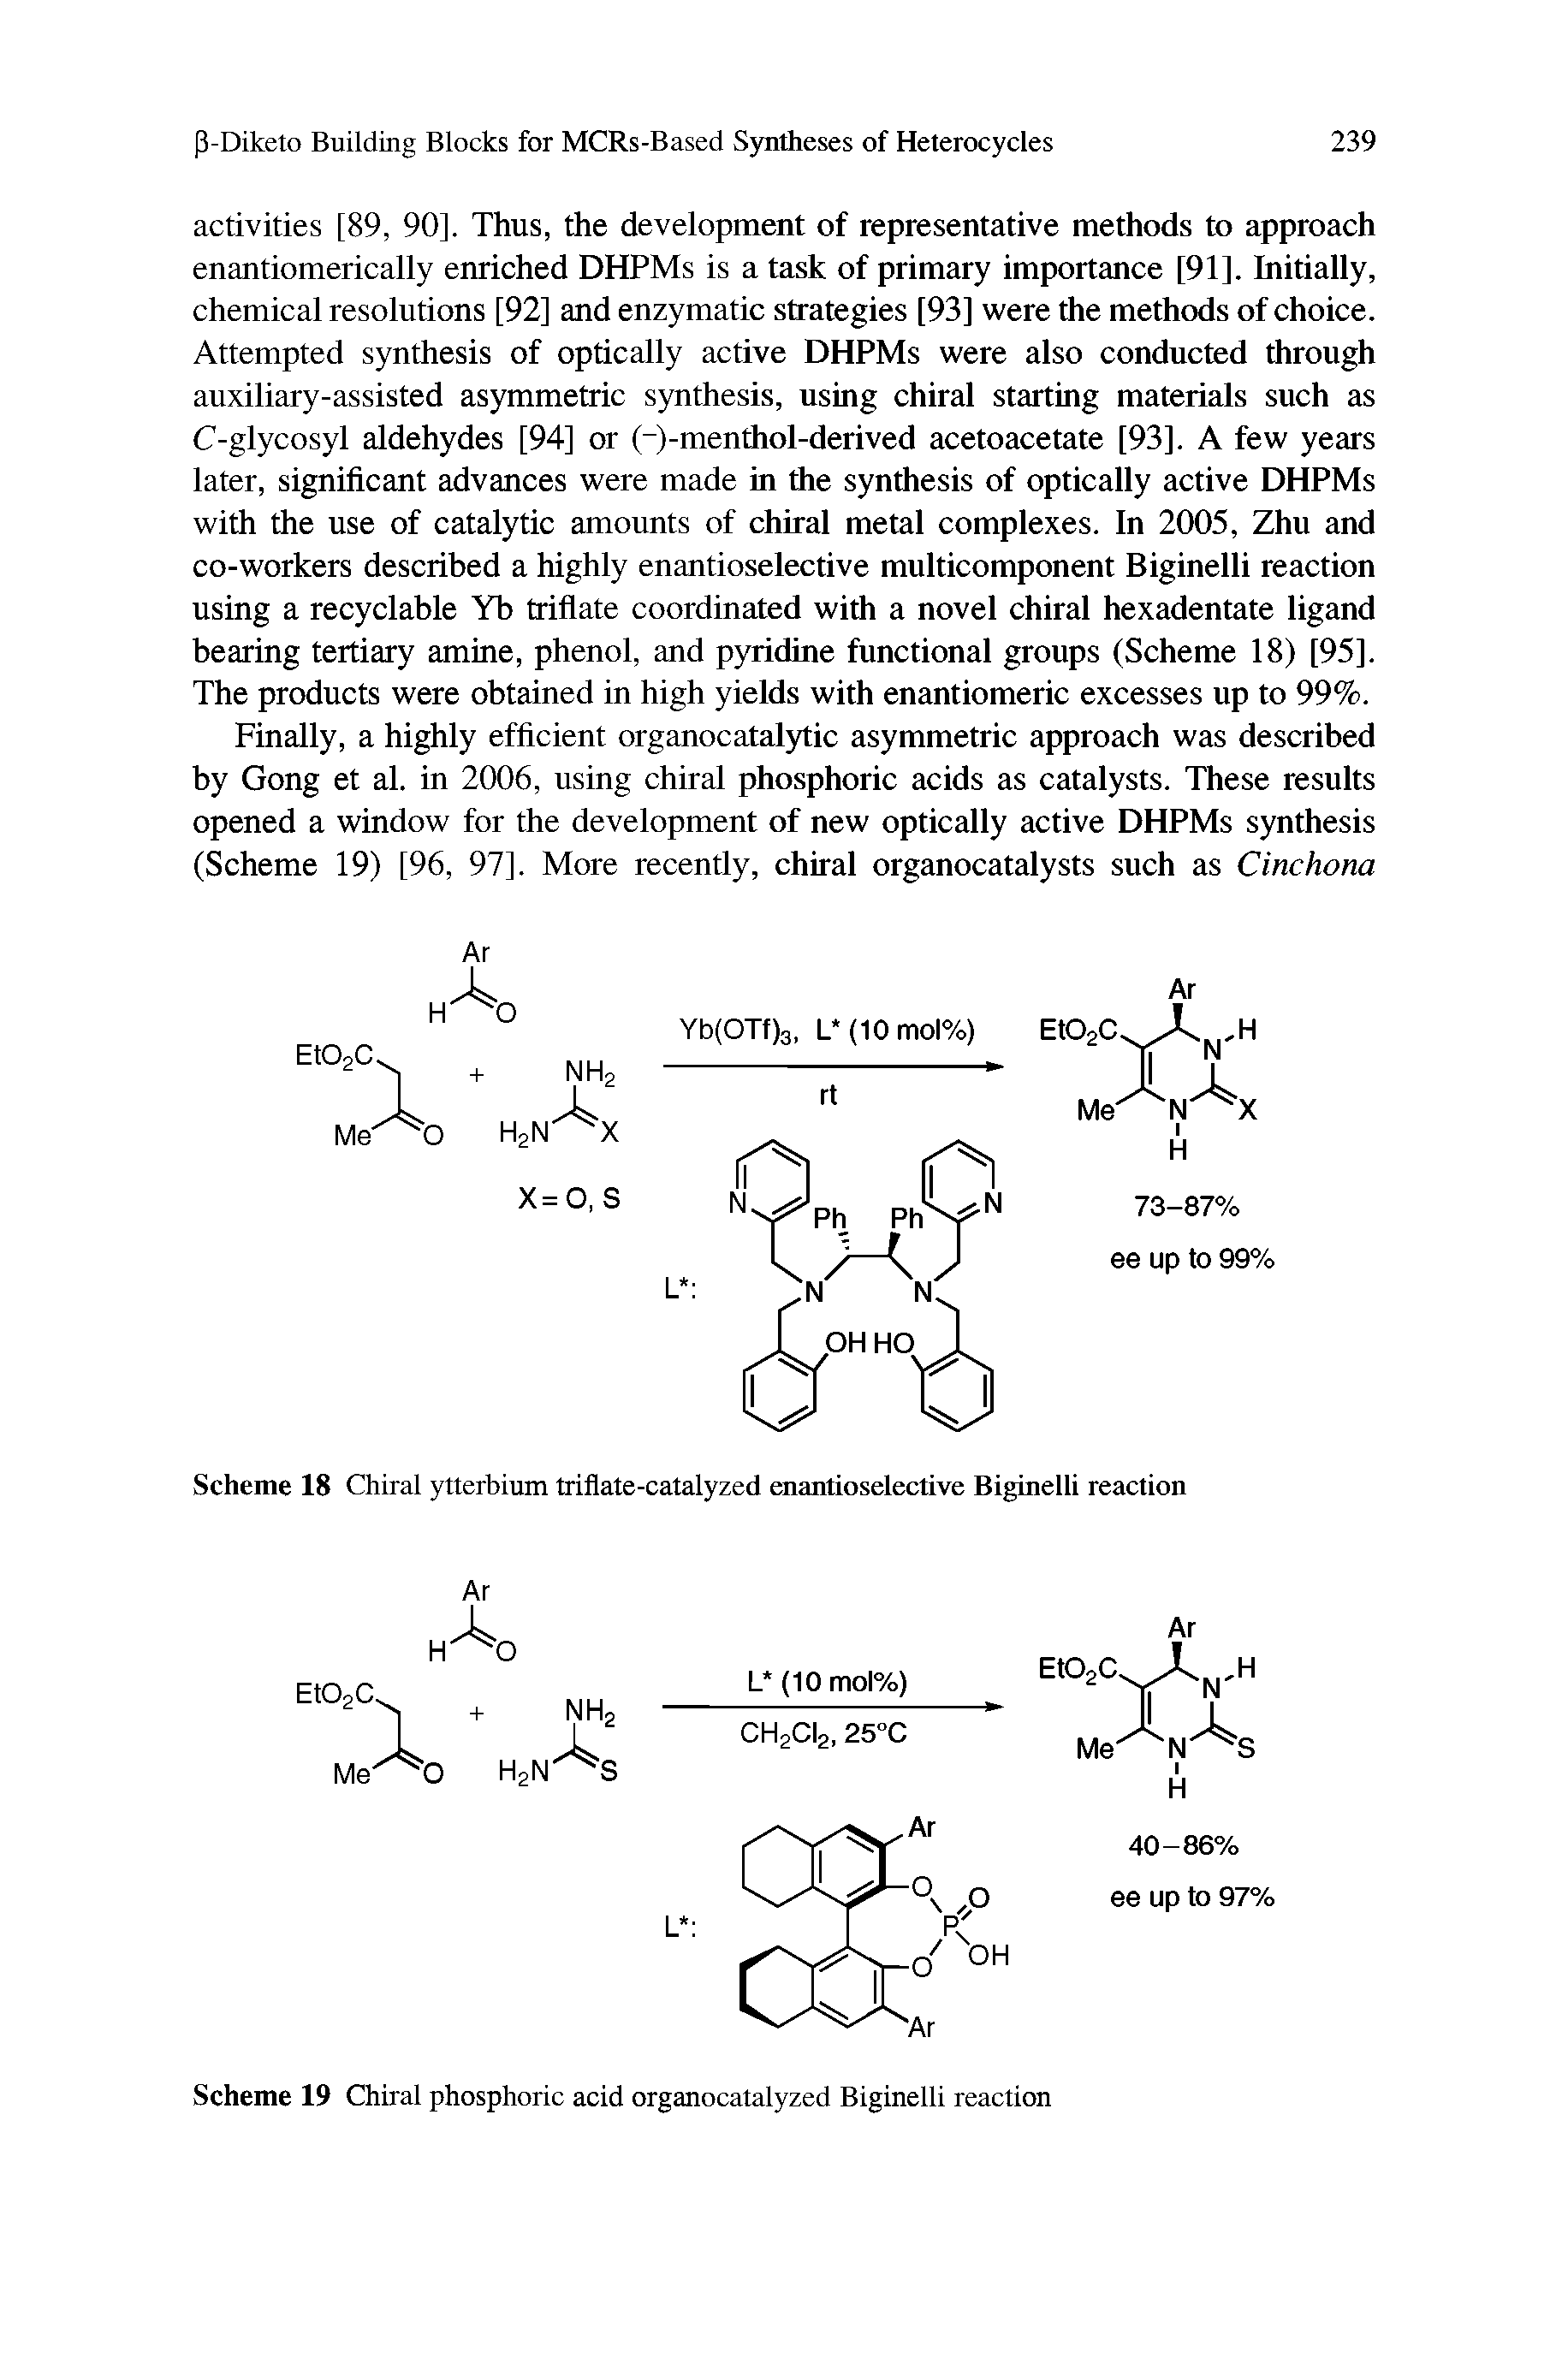 Scheme 19 Chiral phosphoric acid organocatalyzed Biginelli reaction...